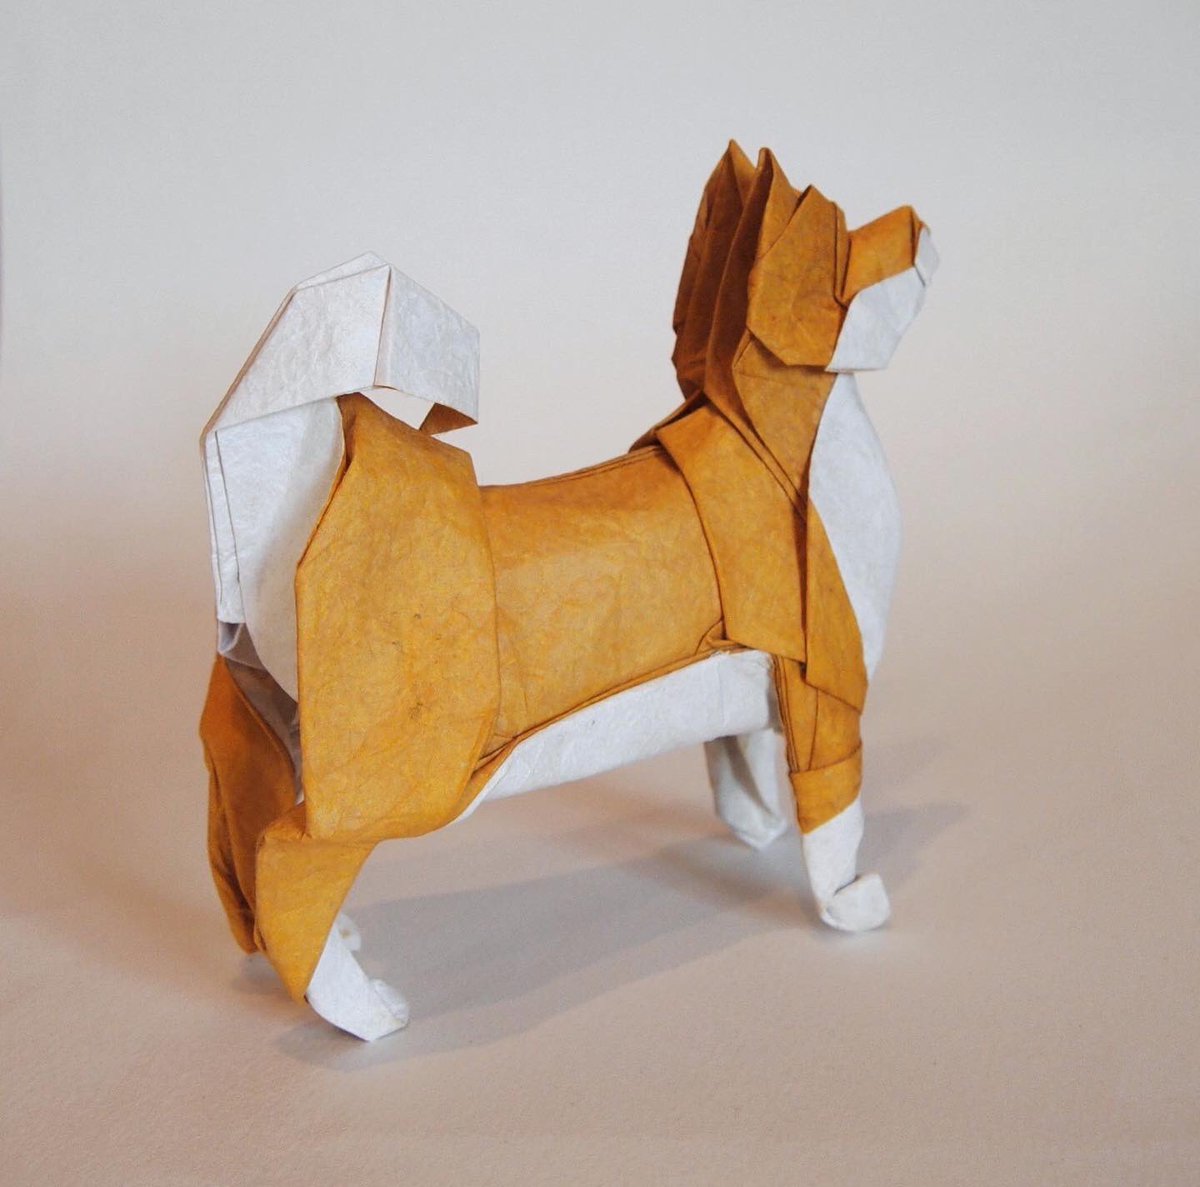 Origami Brasil Rt Kobashi6 折り紙作品 柴犬 創作 折り 一匹柴犬 昔折った柴犬をリニューアルしました 下半身を改善 だいたい説明できる折り方にできたので いつか 折り図描きます Origami Dog 折り紙 折り紙作品 柴犬 T